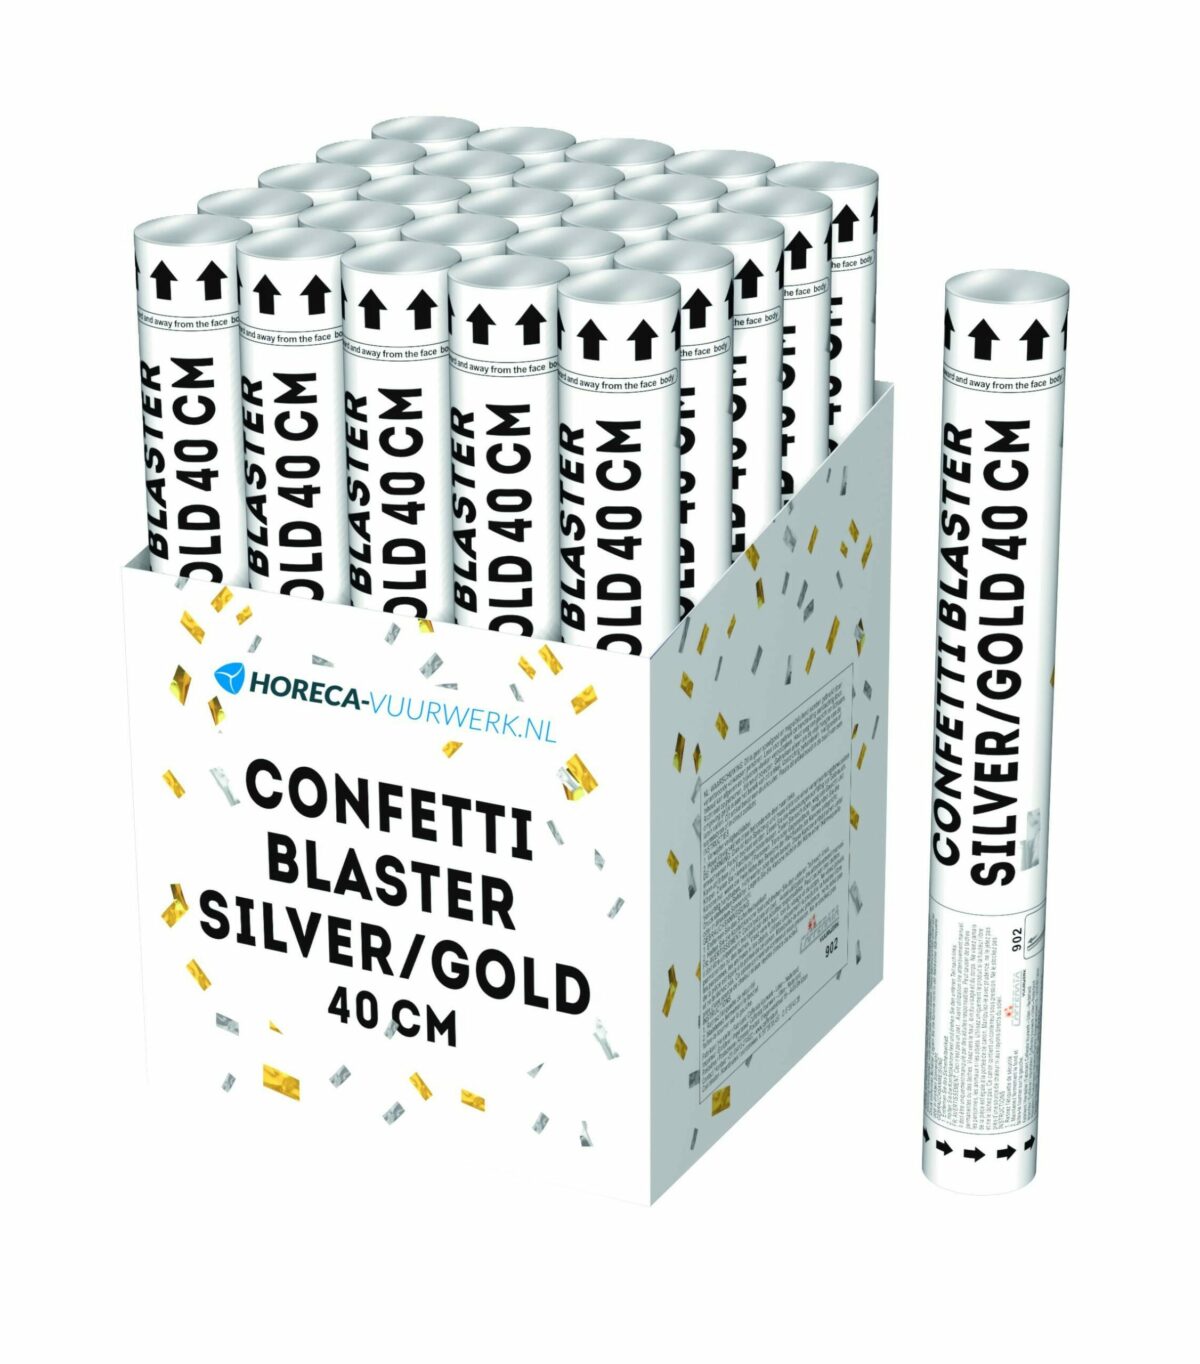 Confetti blaster silver/gold